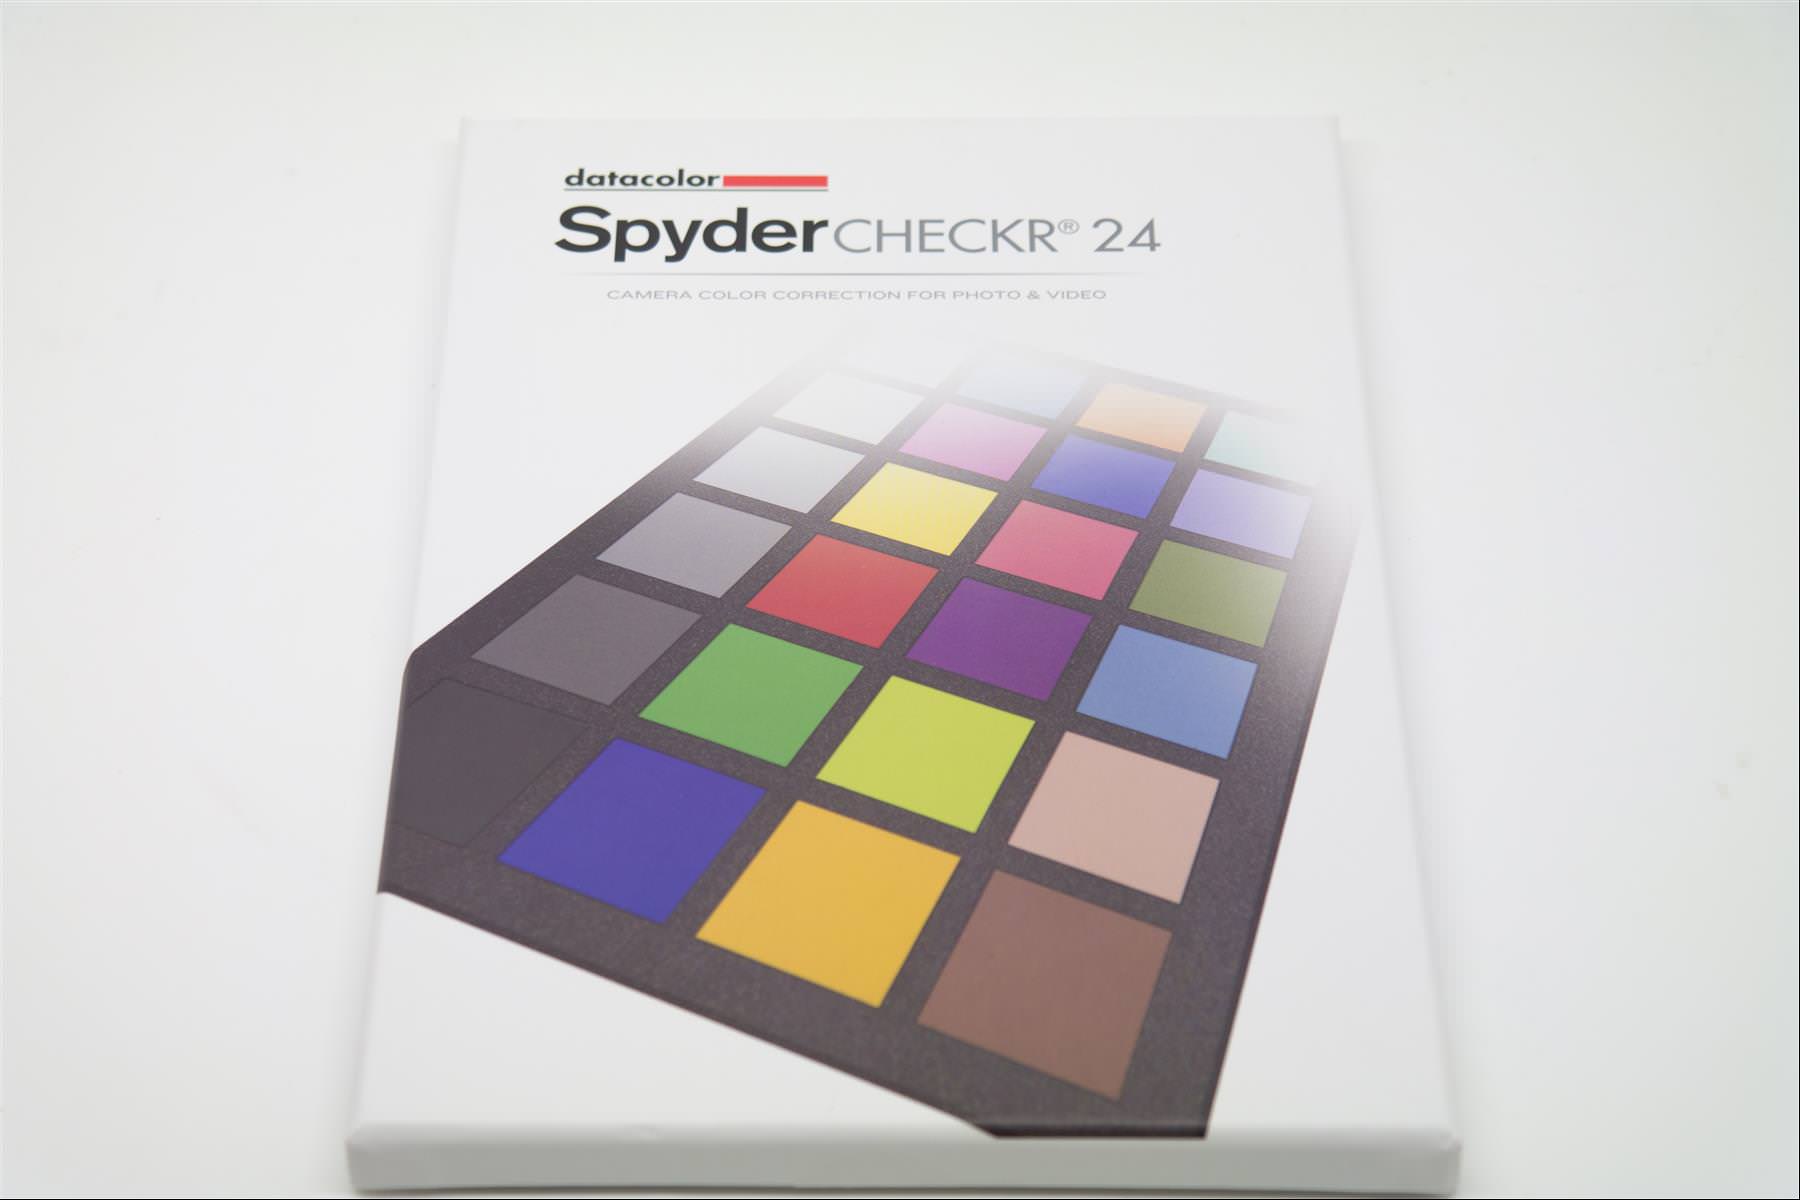 [玩攝影45] SpyderCHECKR 24 校色卡，還給你最精準漂亮的照片色彩